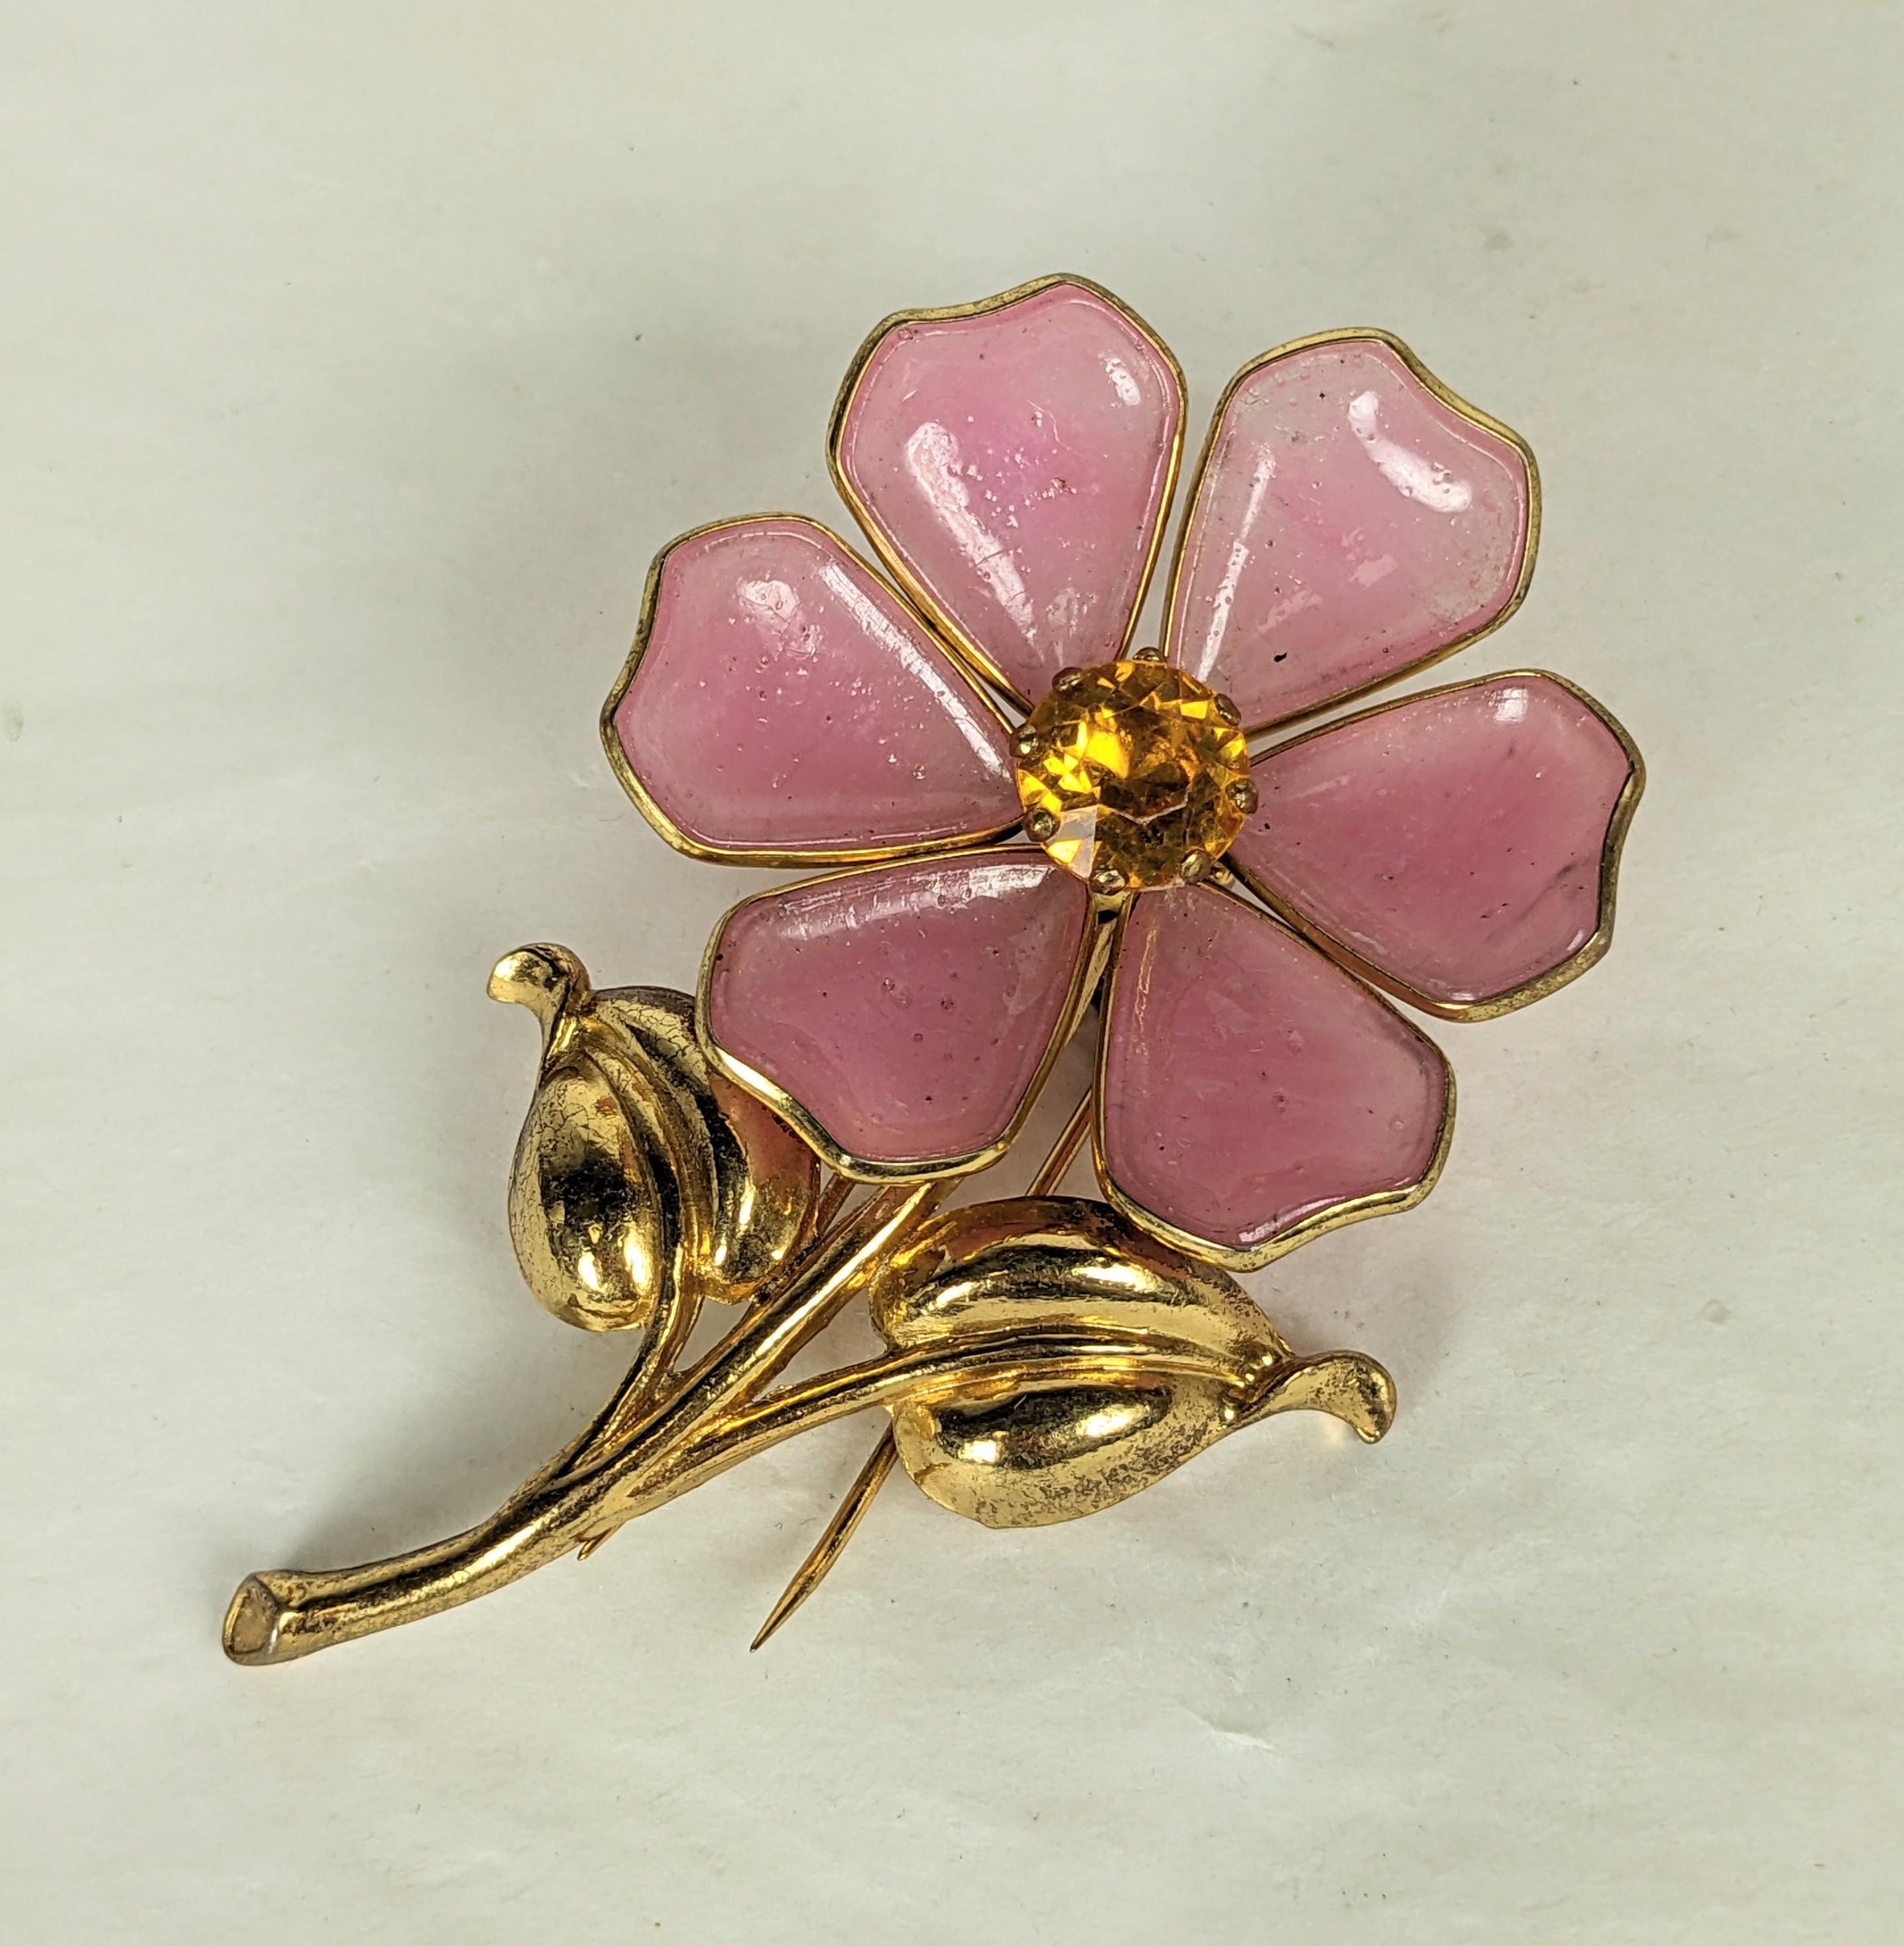 Impressionnante agrafe à fleur rose de style Art déco Gripoix des années 1930. Les pétales de verre rose pâle sont sertis en laiton avec un centre en cristal de topaze sur une base de feuilles dorées. Pièce des années 1930 conçue pour imiter un